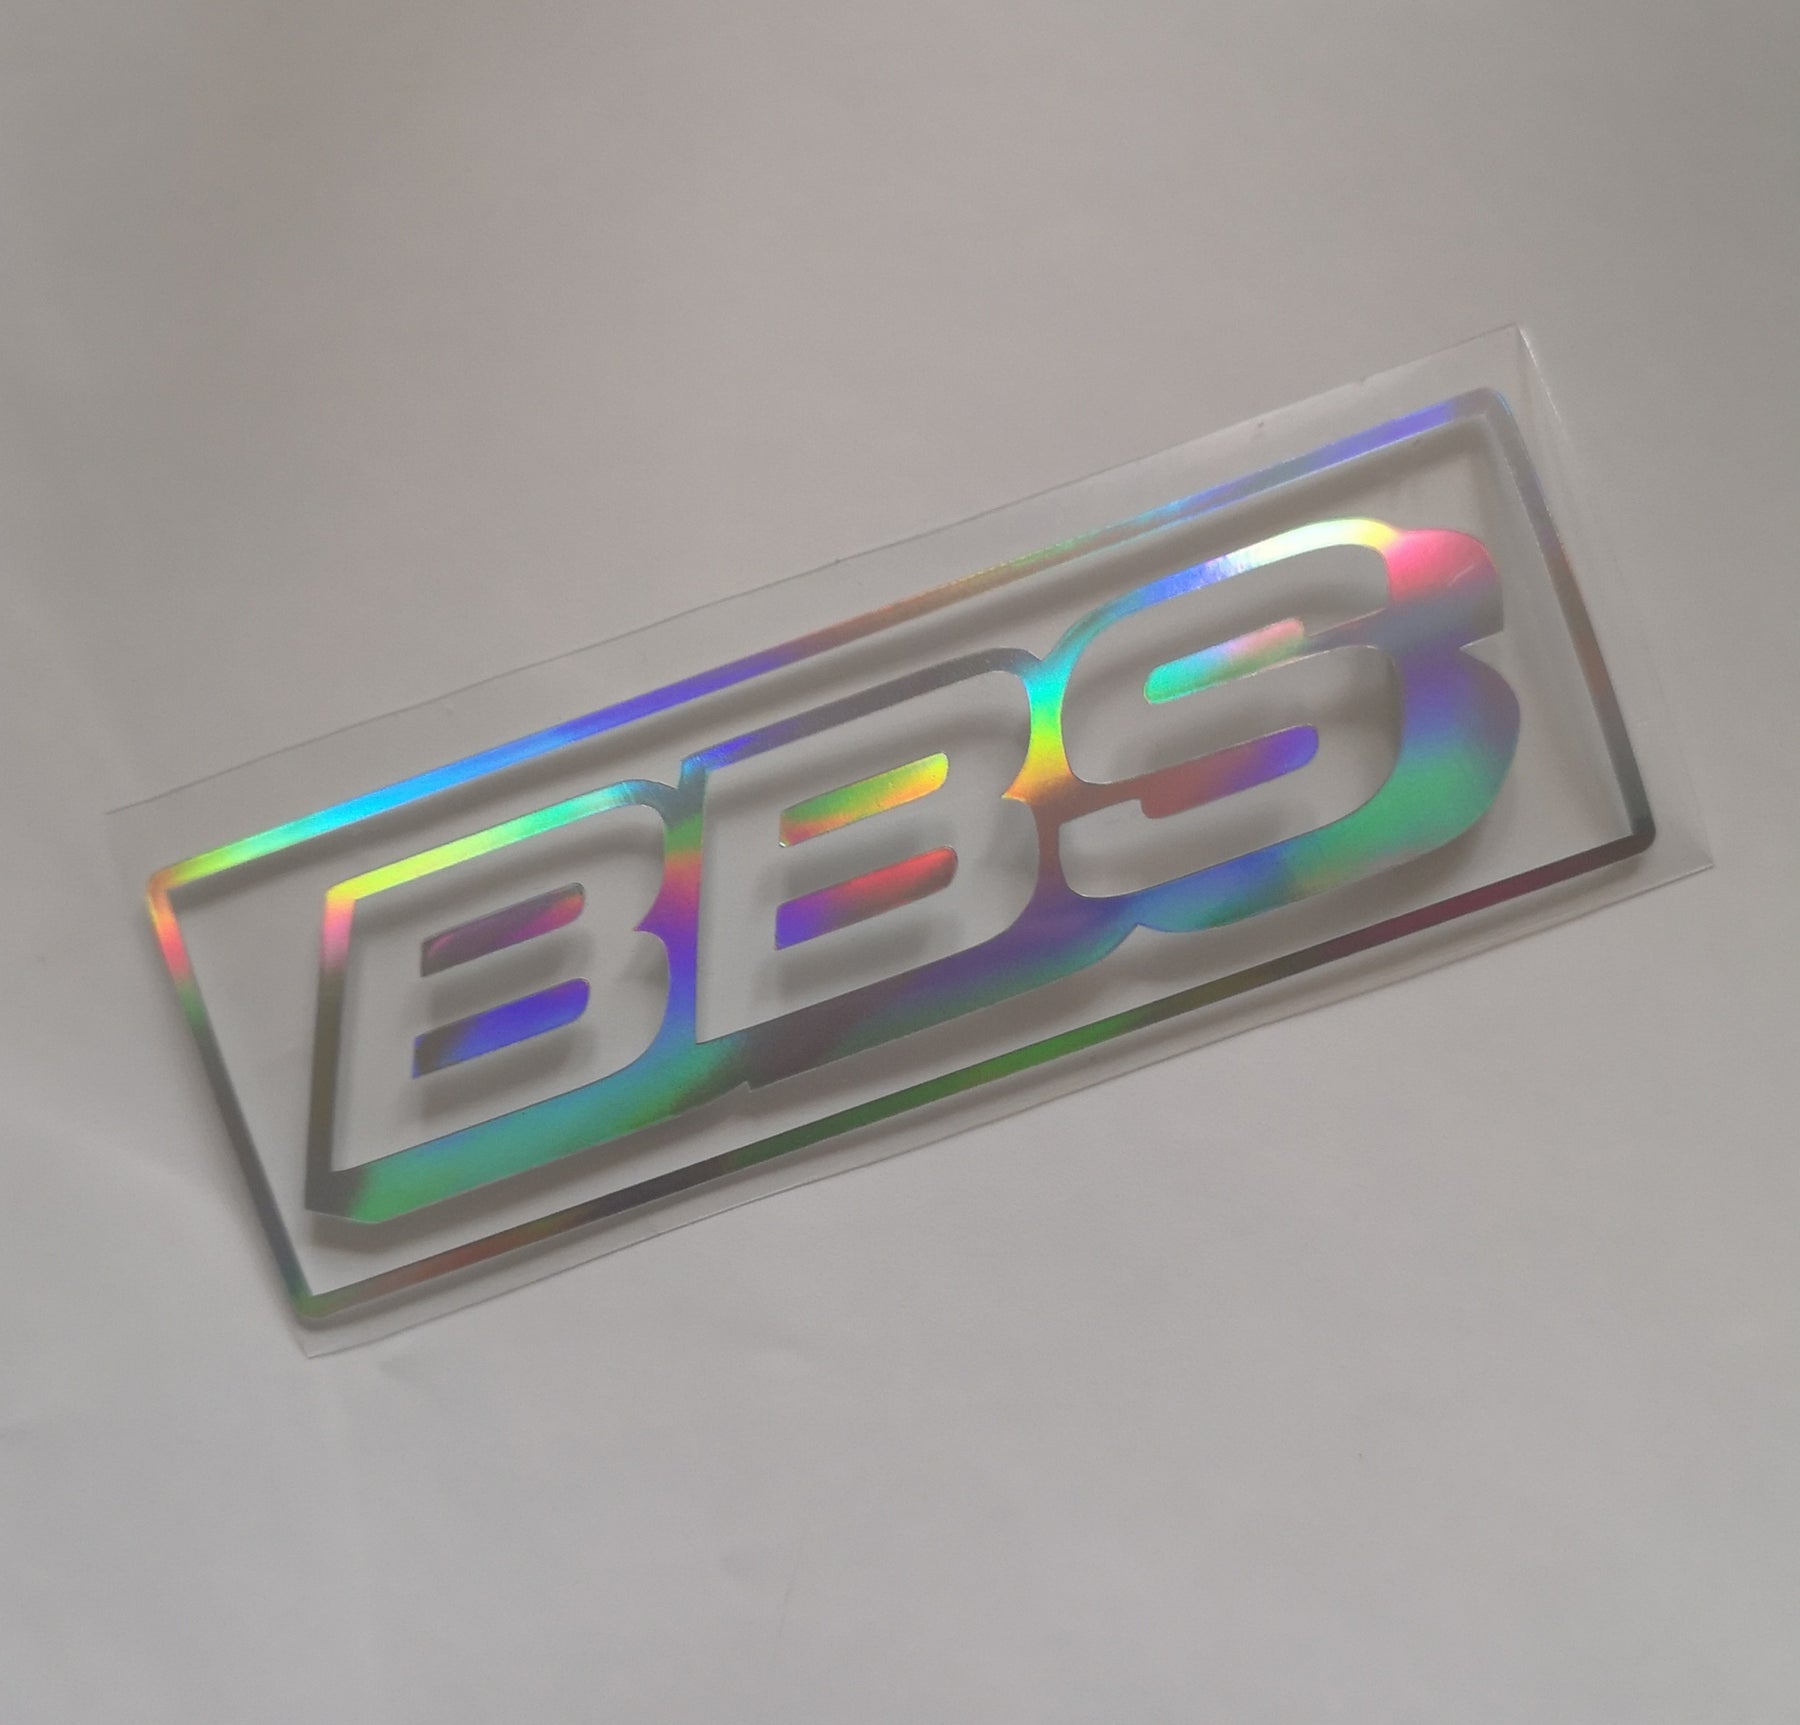 Hologramm KFZ Aufkleber Oilslick Auto Tuning Sticker Scheibe Hecksticker